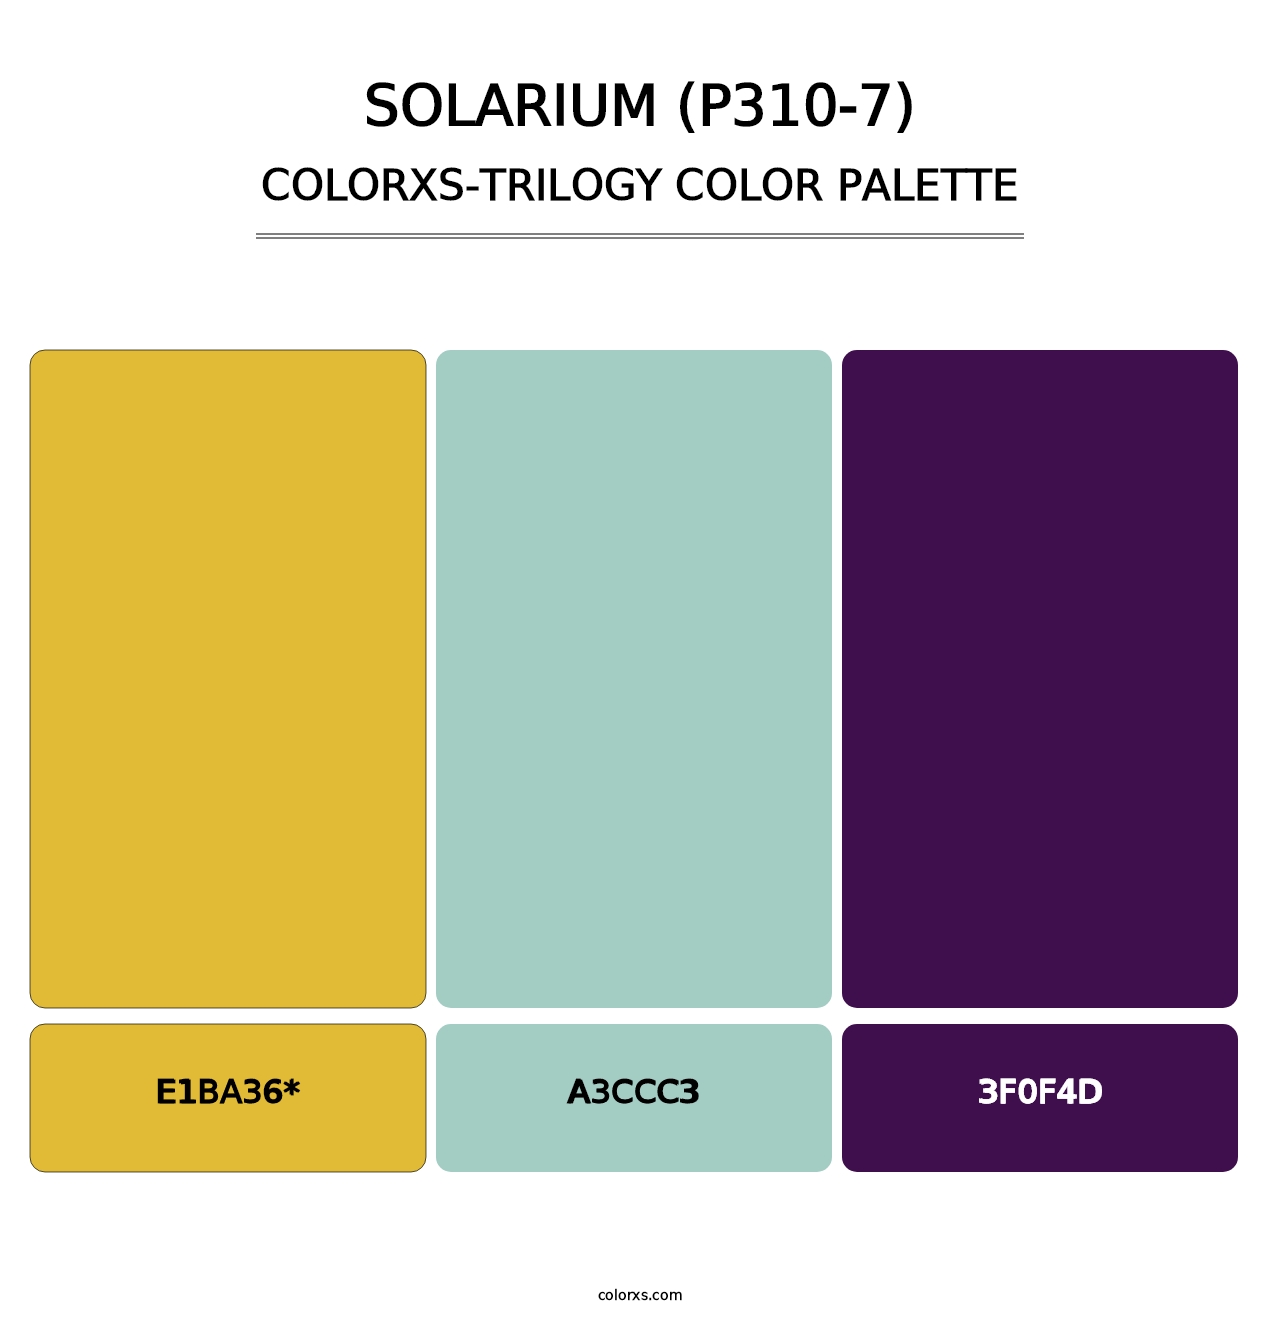 Solarium (P310-7) - Colorxs Trilogy Palette